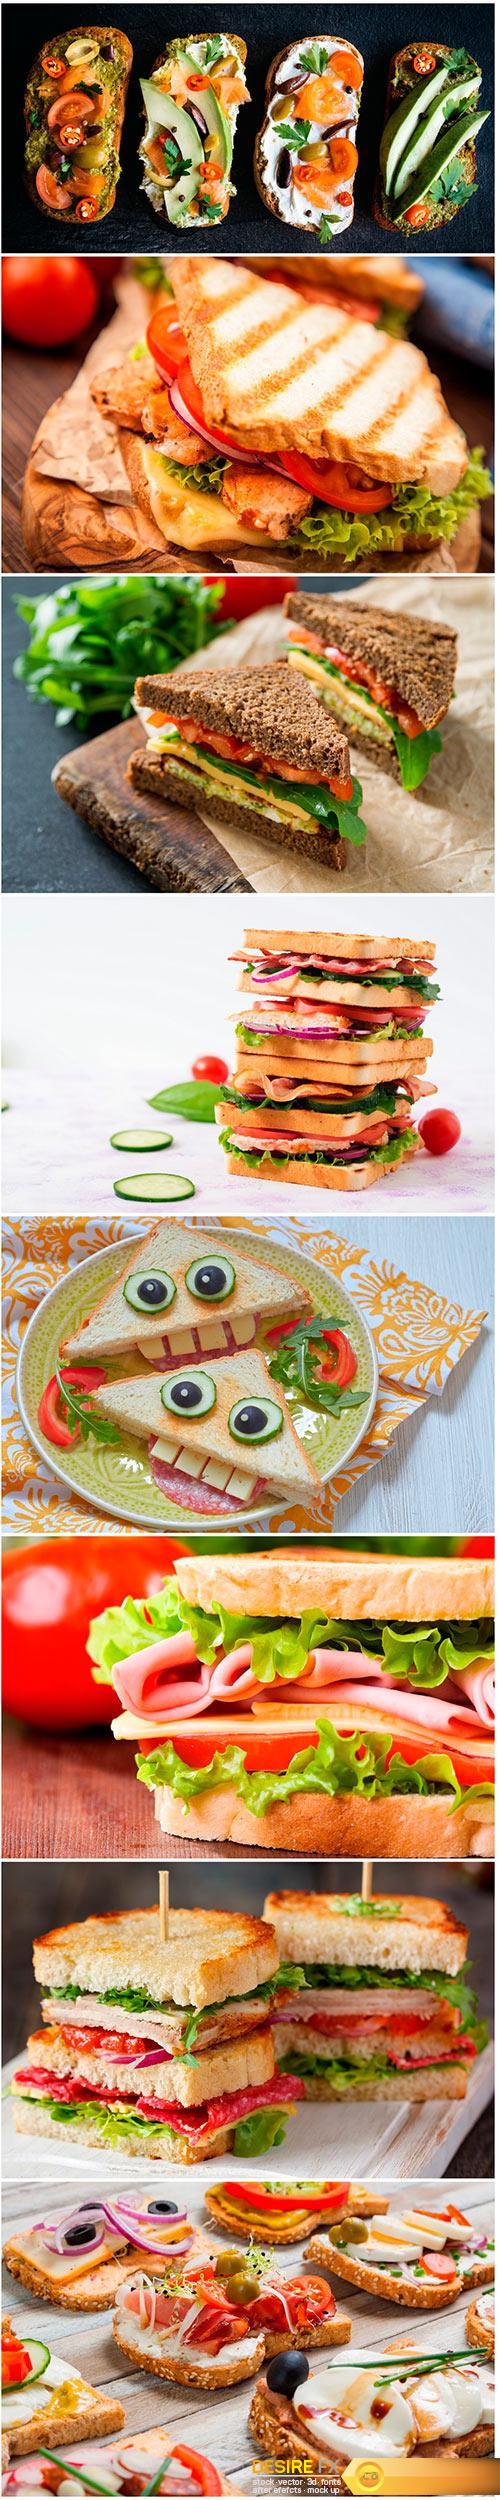 Sandwich - 8UHQ JPEG